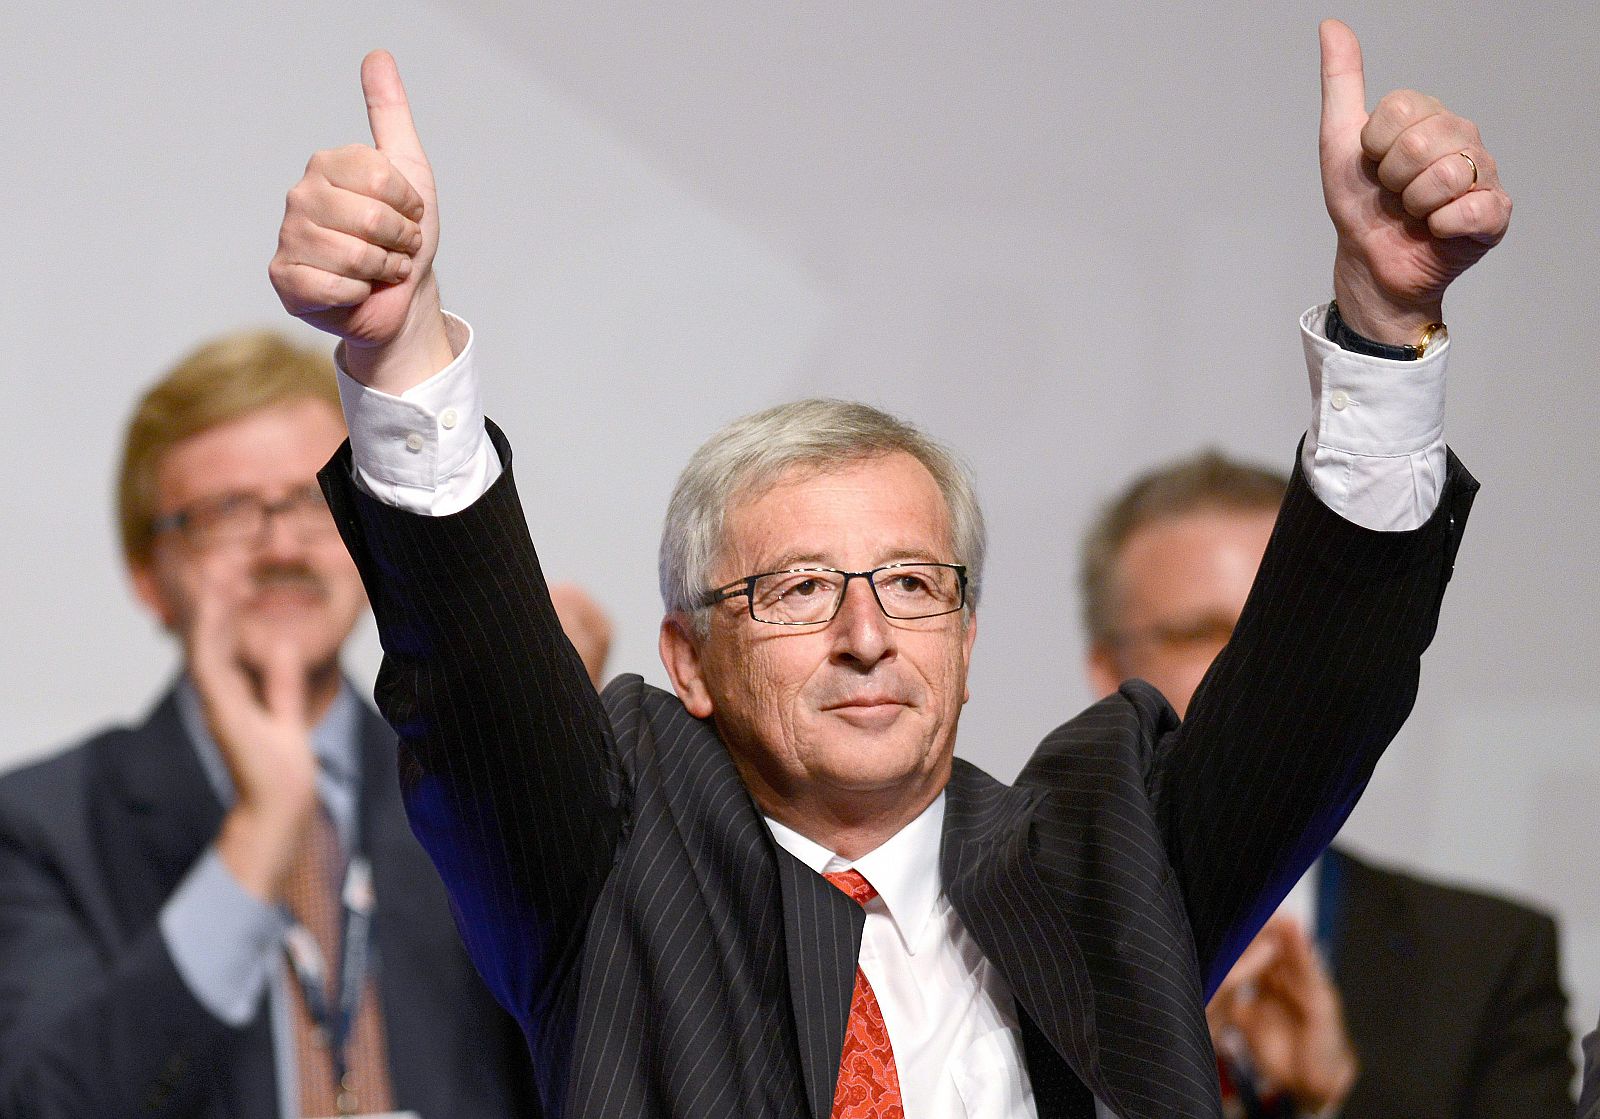 El luxemburgués Jean-Claude Juncker eleva los pulgares en un discurso en una convención de la CDU alemana.